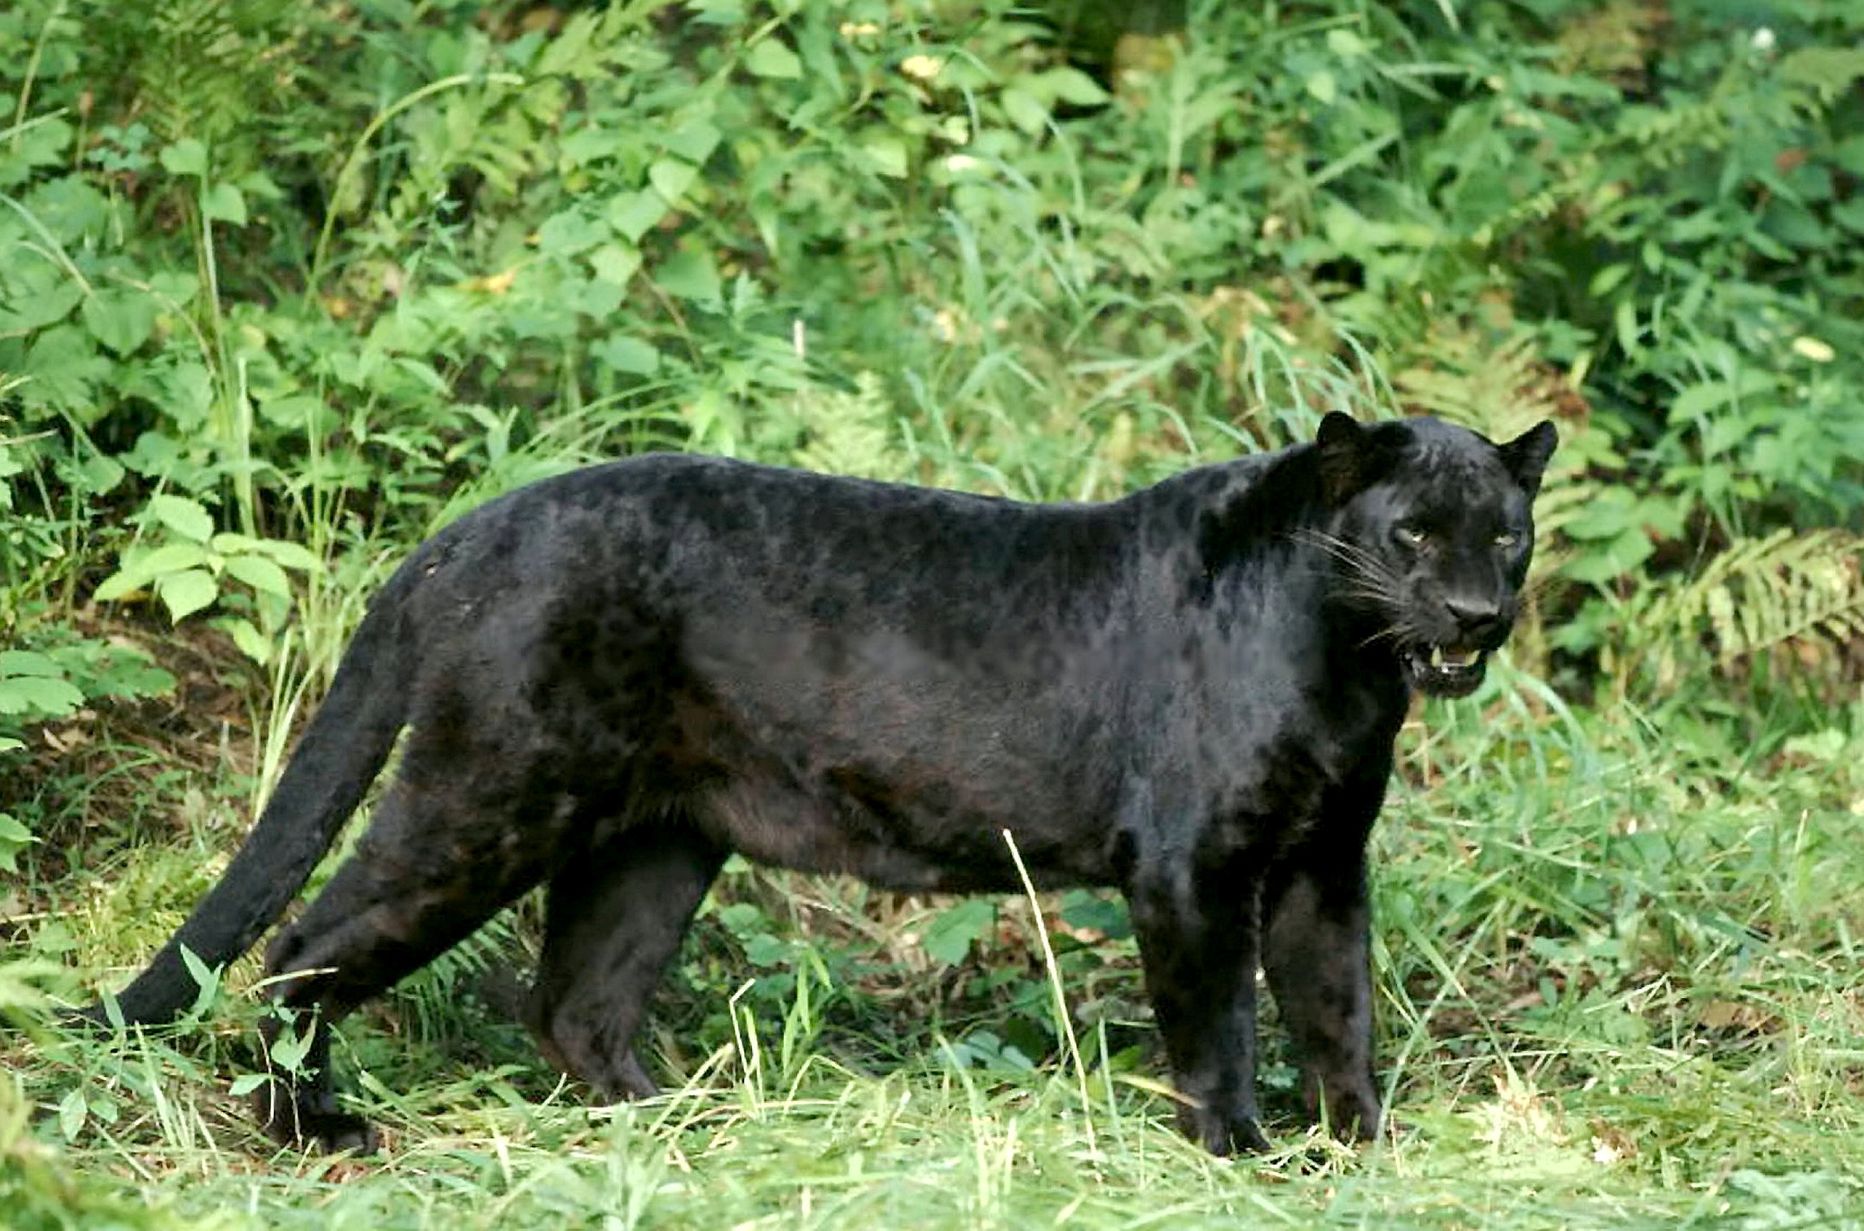 Pildil on must leopard, rahvakeeles must panter. Inglanna Sara Coxi arvates nägi ta seda looma Suurbritannias looduses